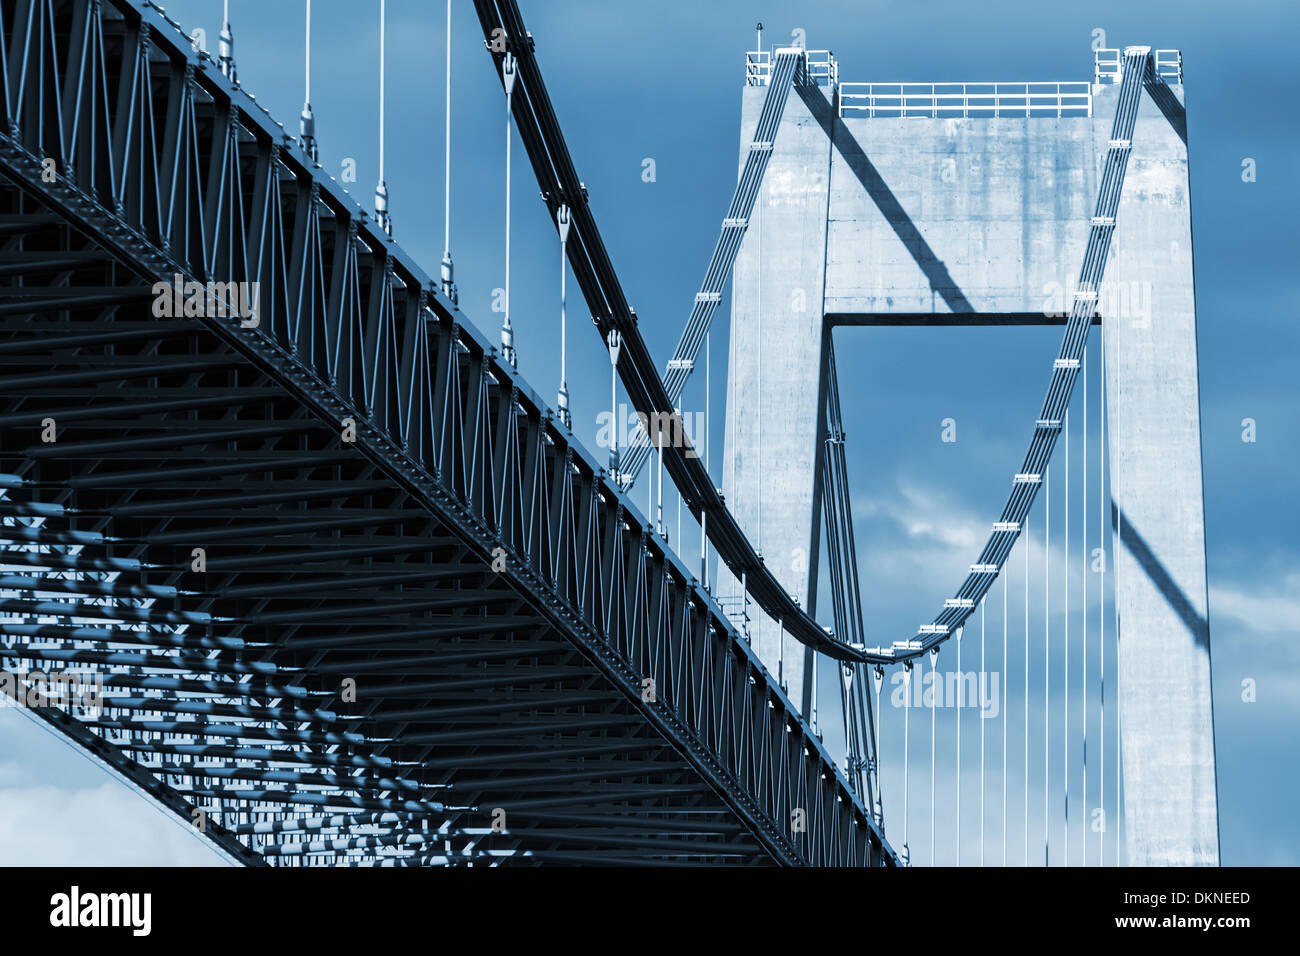 Typische Kfz Kabel-gebliebene Brücke. Monochrome Fotos Stockfoto